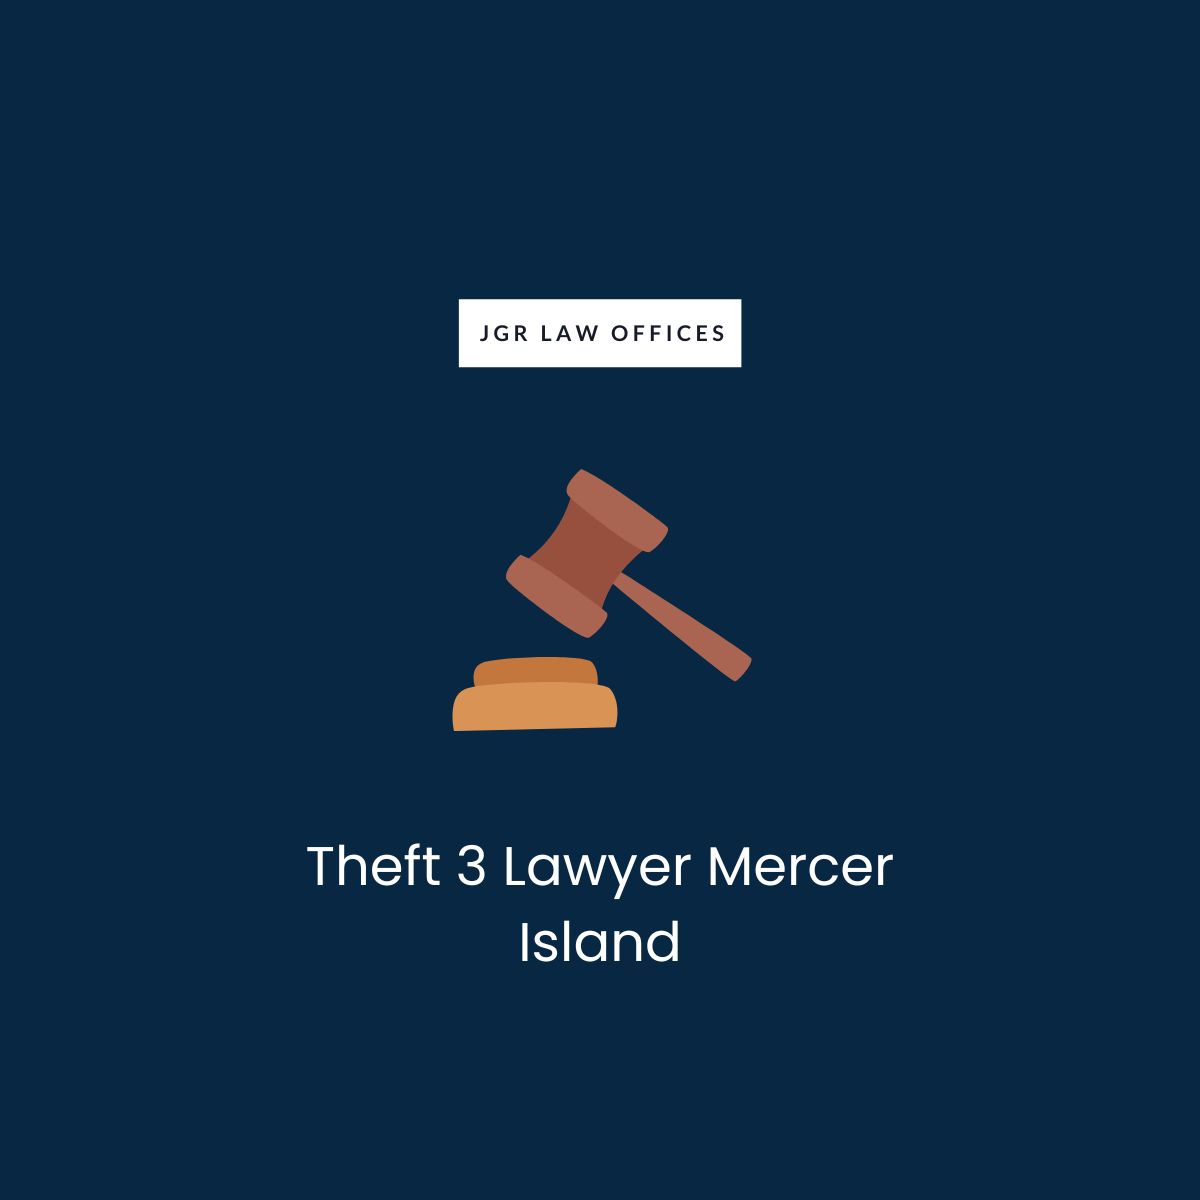 Theft 3 Attorney Mercer Island